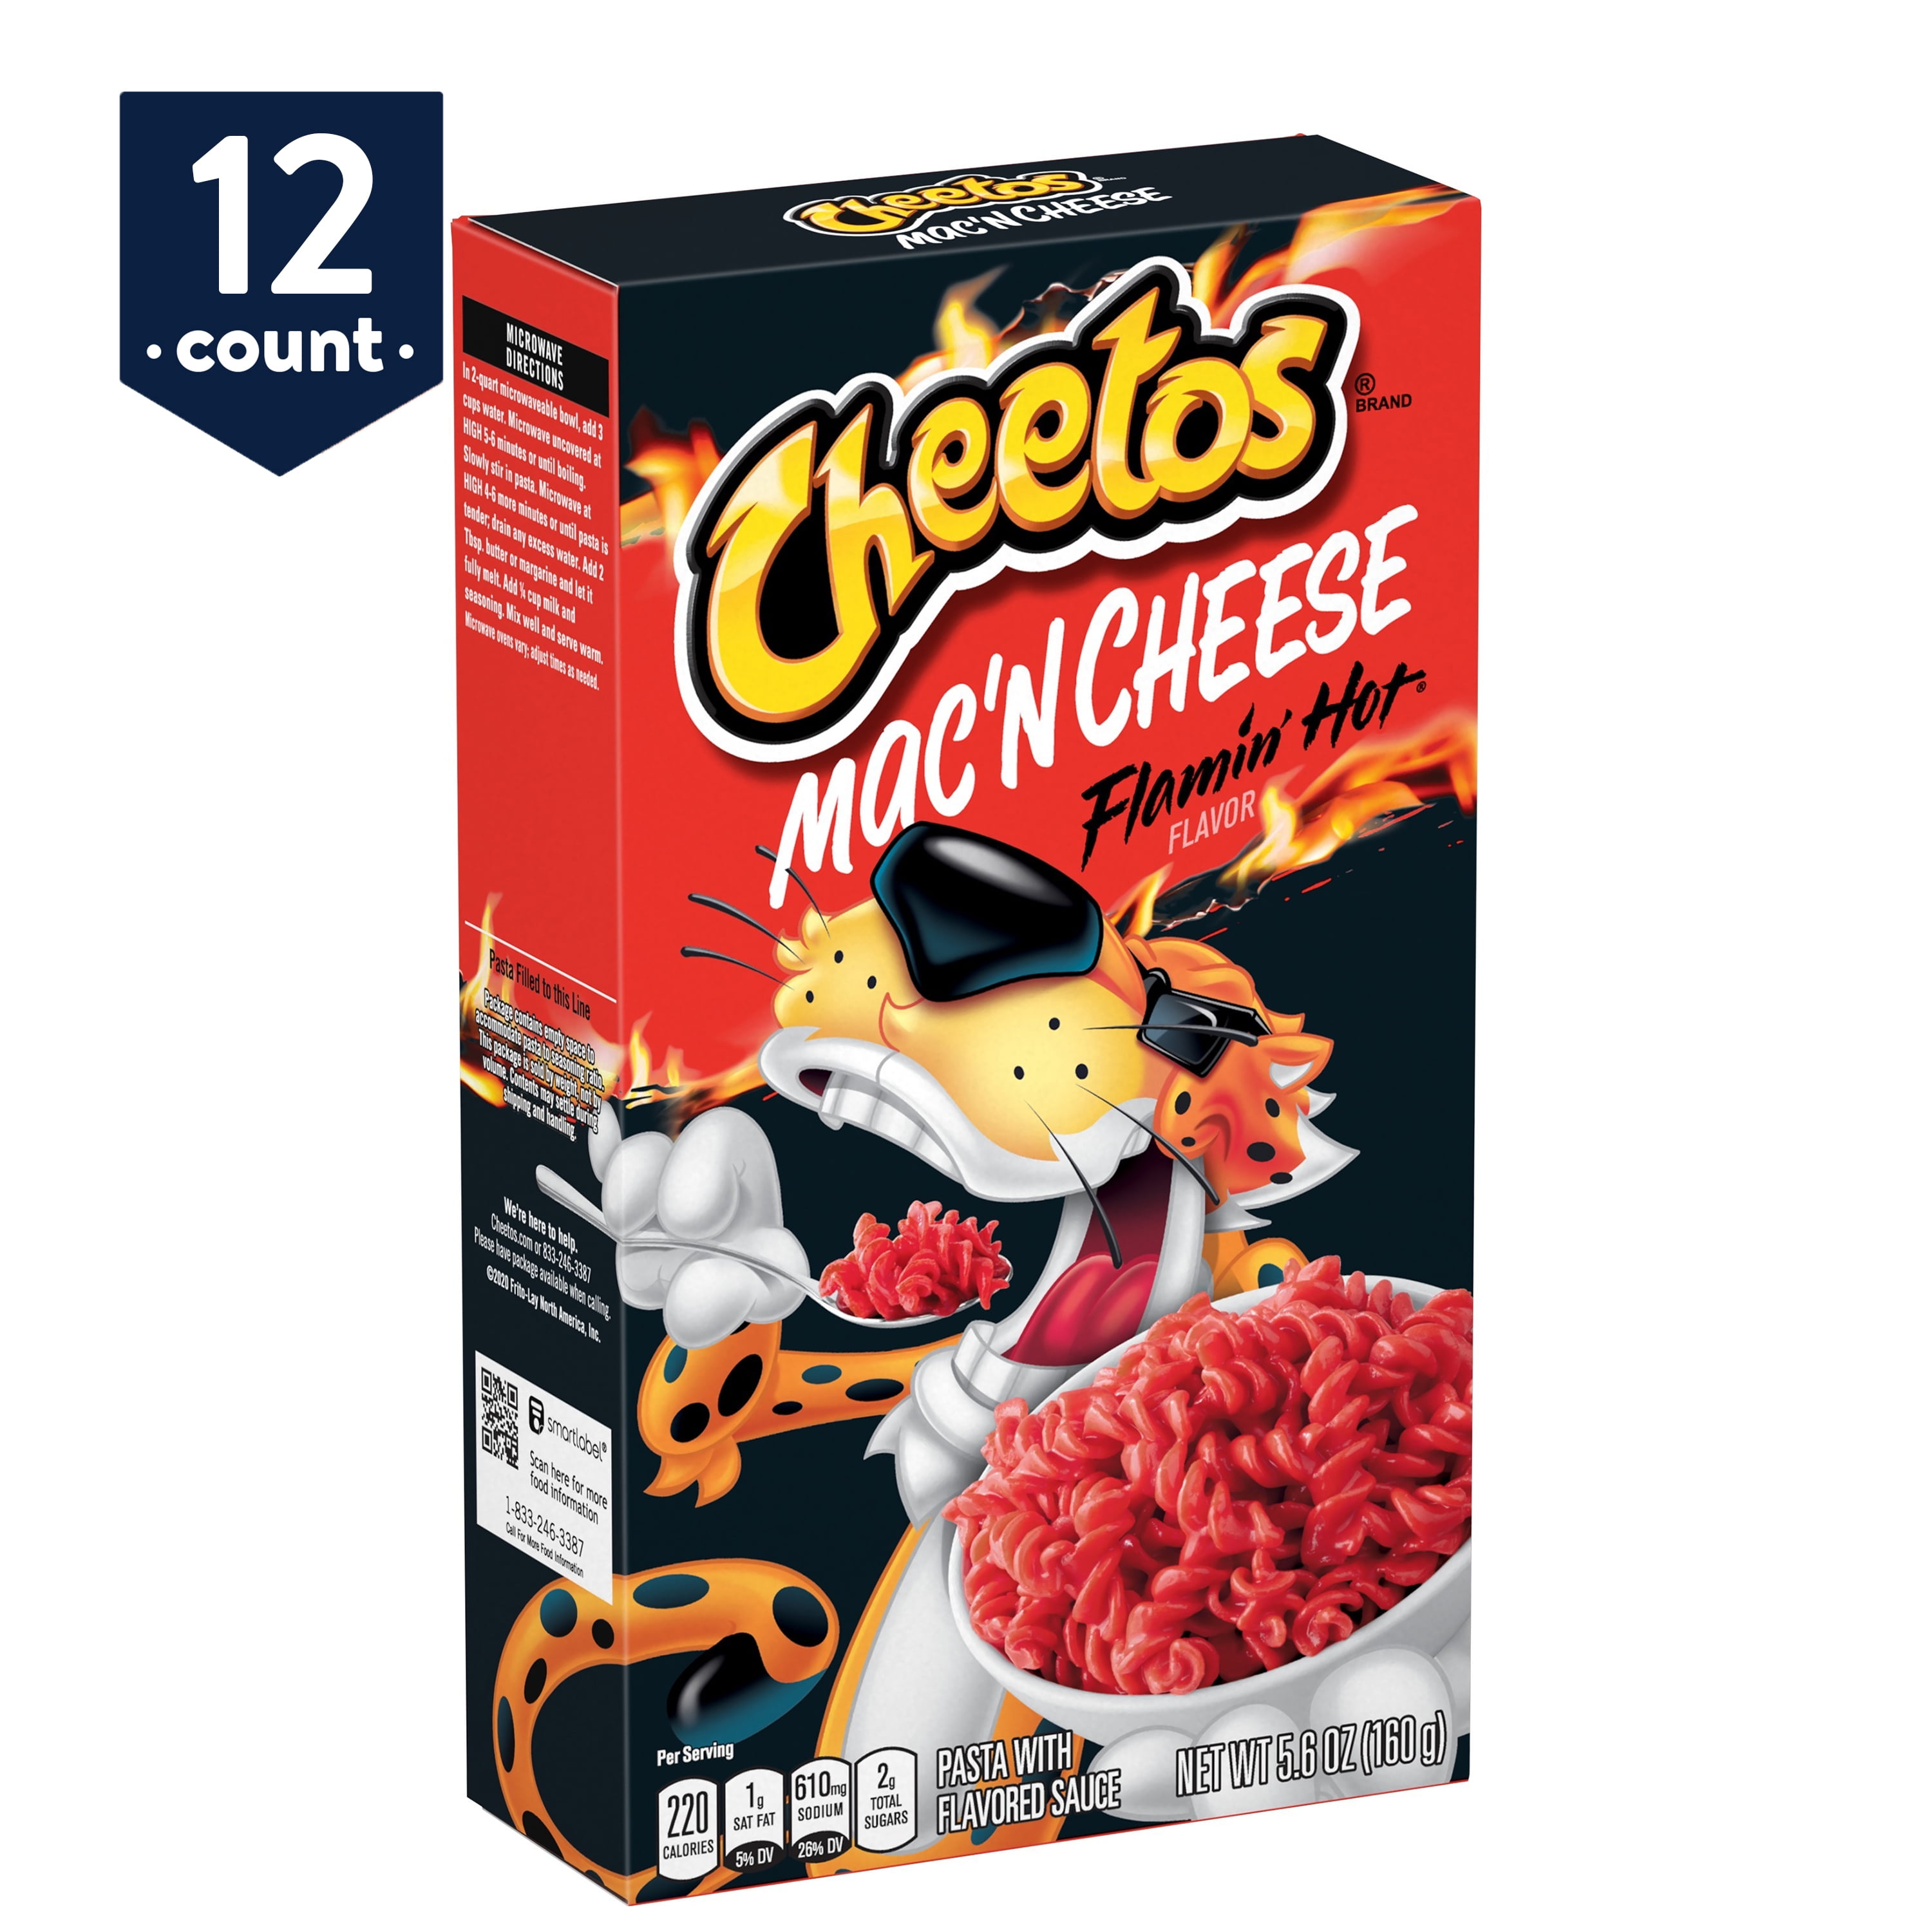 Cheetos Mac 'N Cheese, Flamin' Hot Flavor, 5.6 oz Boxes, 12 Count...